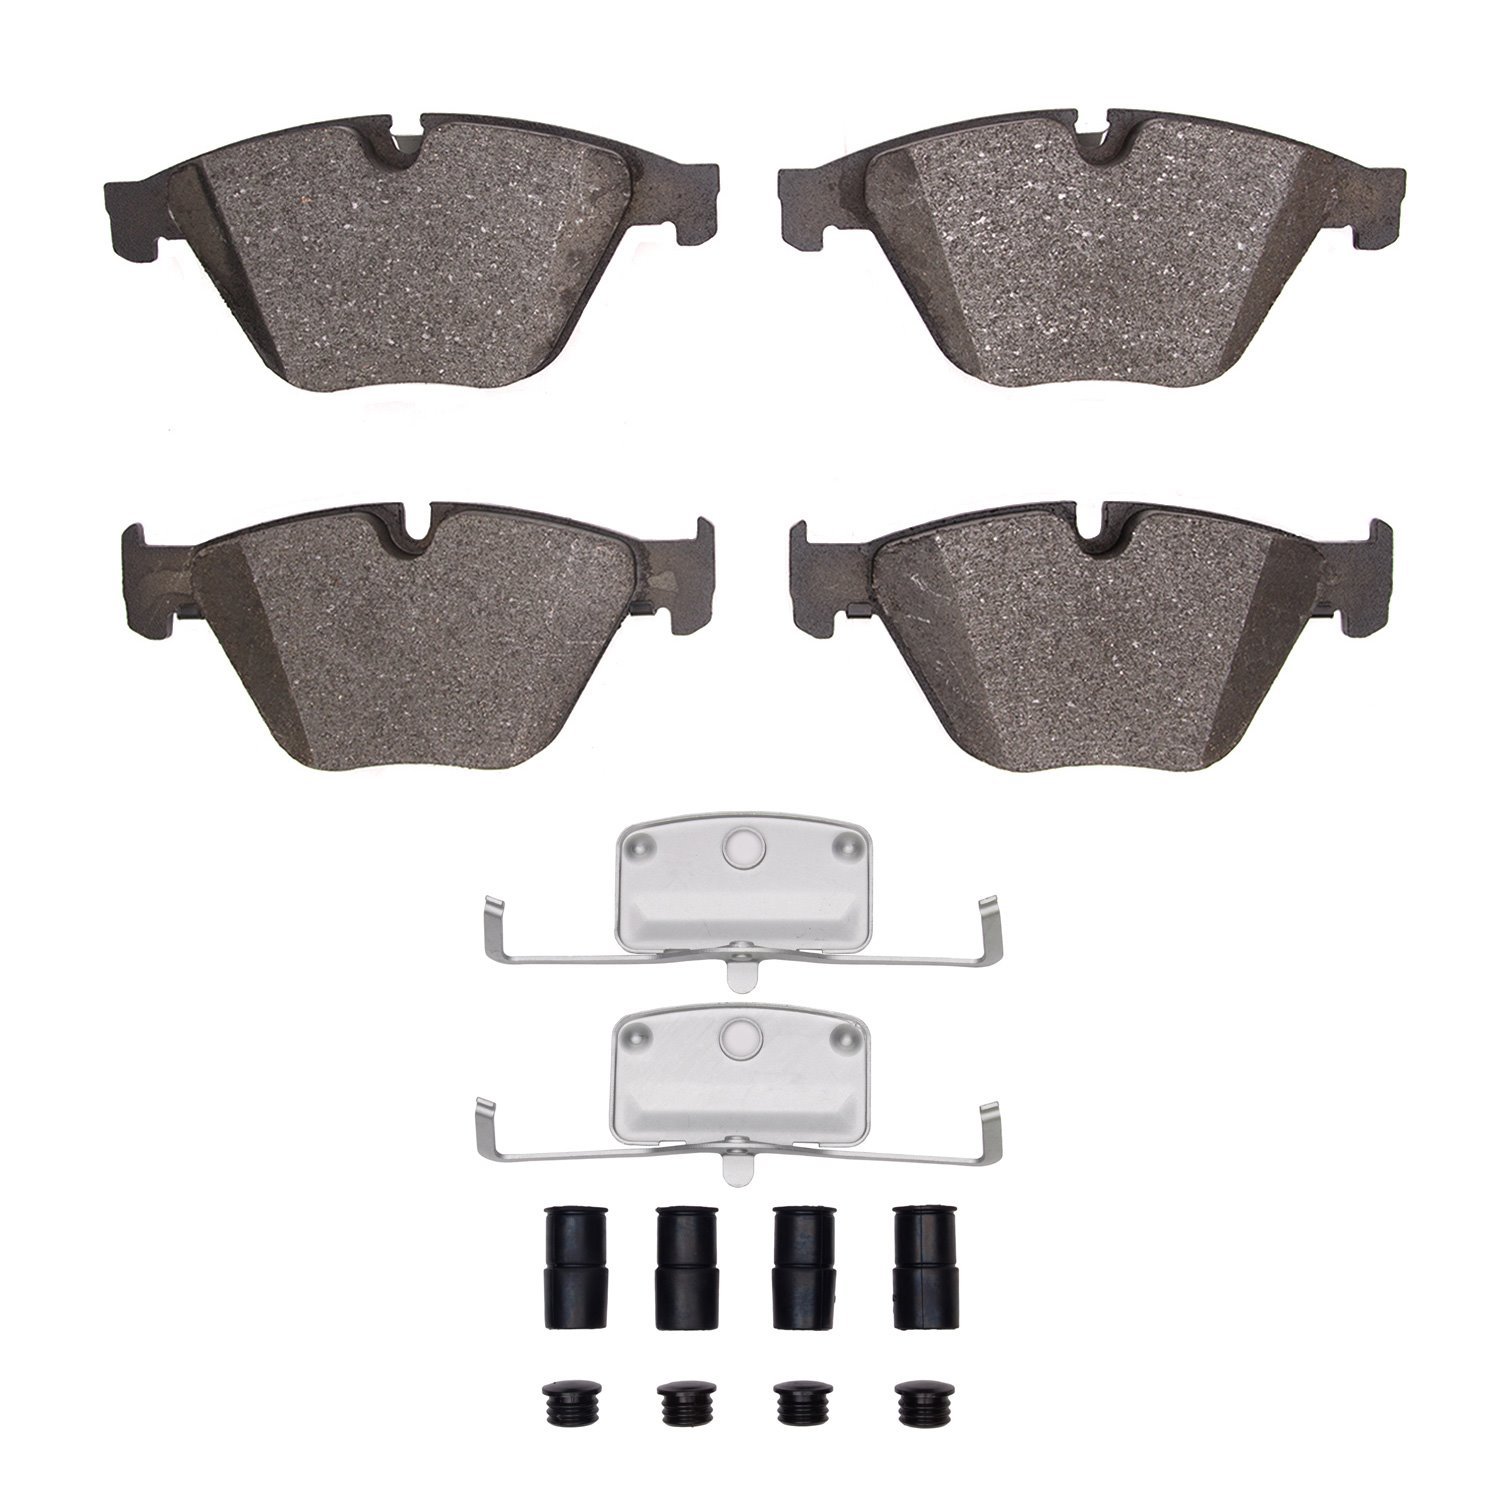 1311-1505-01 3000-Series Semi-Metallic Brake Pads & Hardware Kit, 2011-2019 BMW, Position: Front